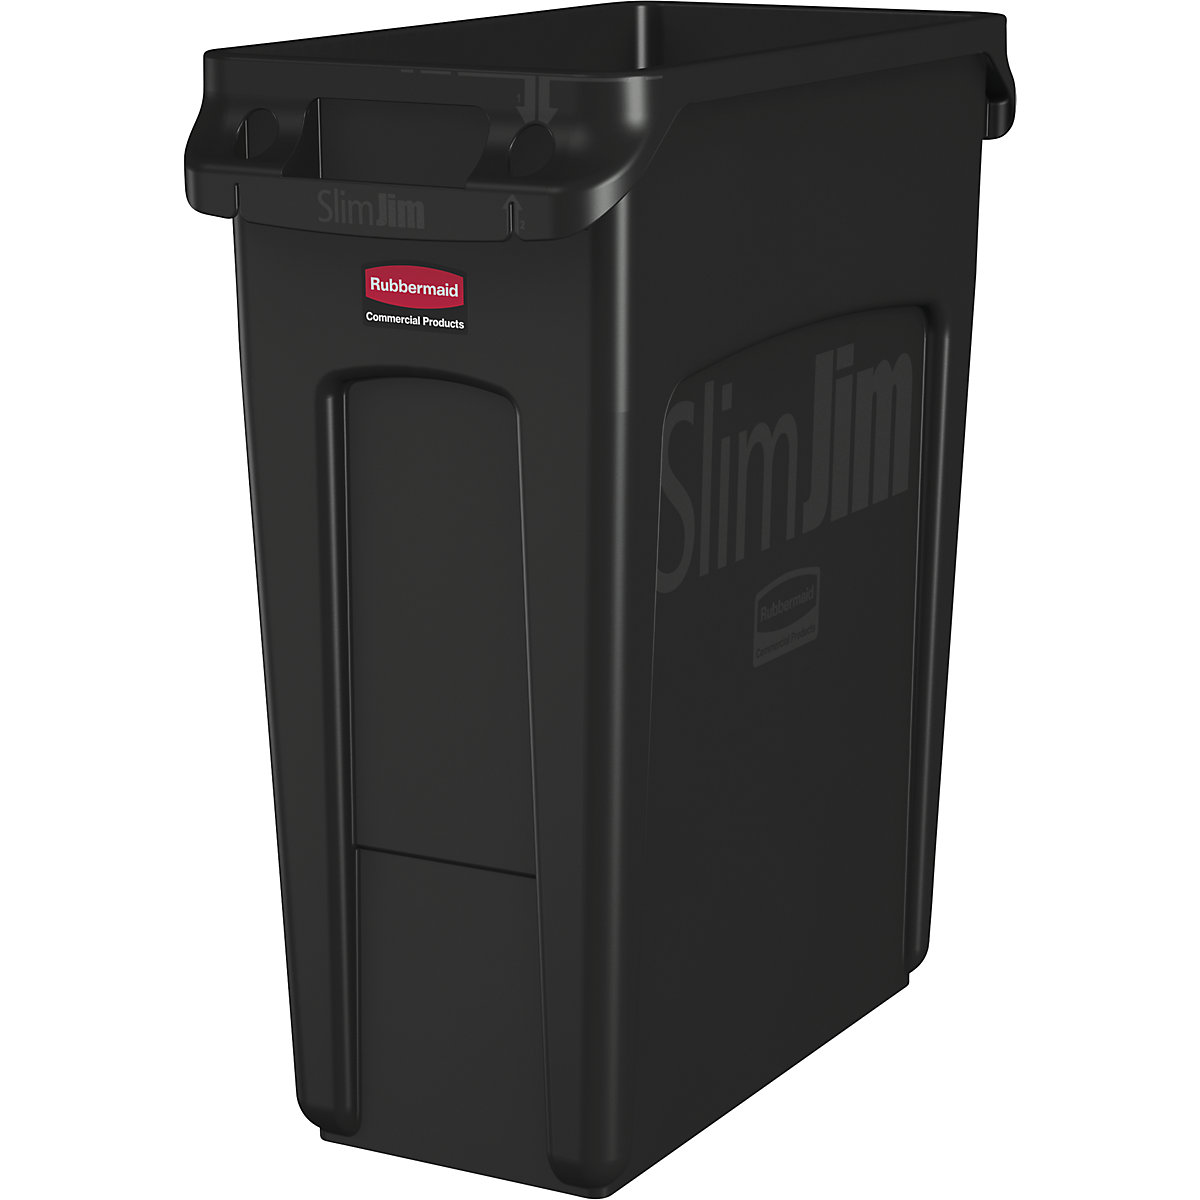 Nádoba na tříděný odpad/odpadkový koš SLIM JIM® – Rubbermaid, objem 87 l, s větracími kanálky, černá-13